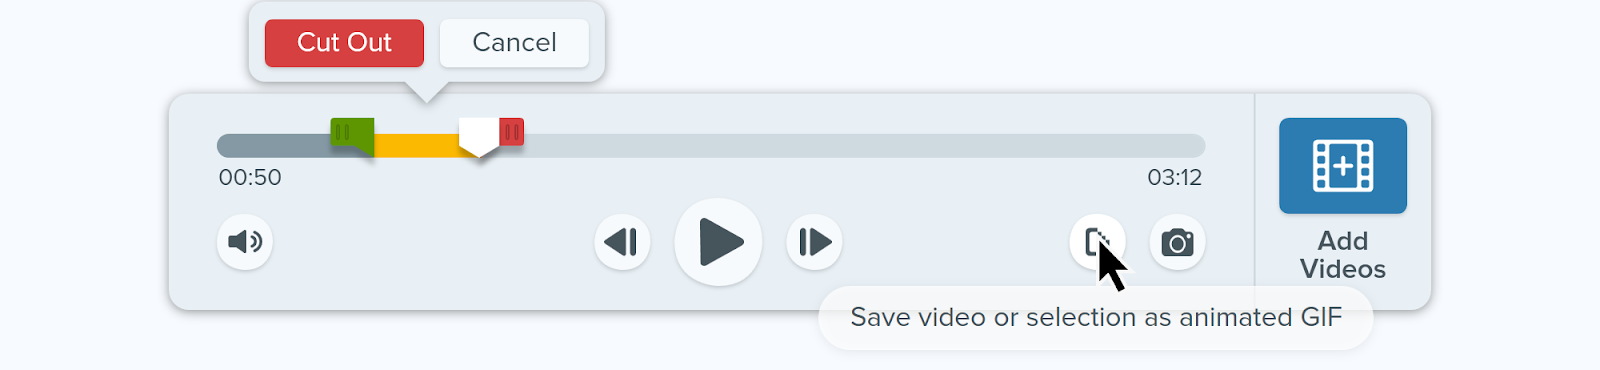 Imagem da interface fácil de usar do Snagit em que o cursor passa sobre o botão "Salvar vídeo ou seleção como GIF animado".